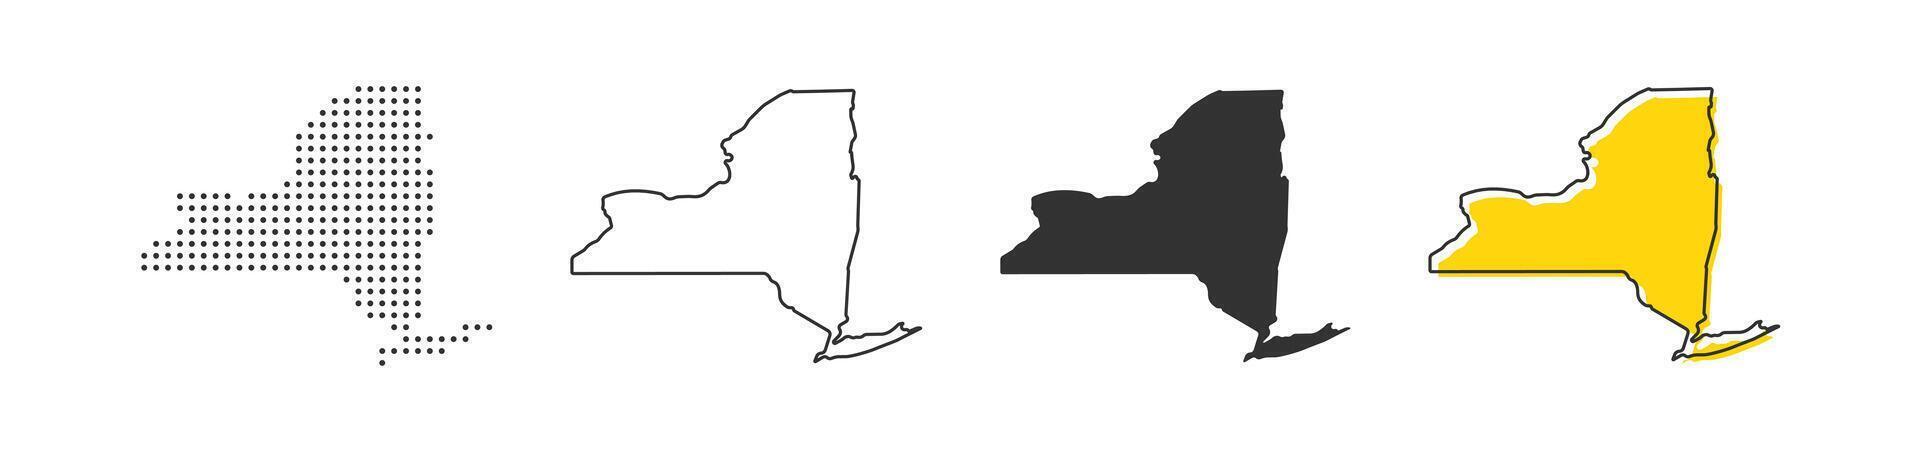 Neu York Zustand Karte von USA Land. Erdkunde Rand von amerikanisch Stadt. Vektor Illustration.